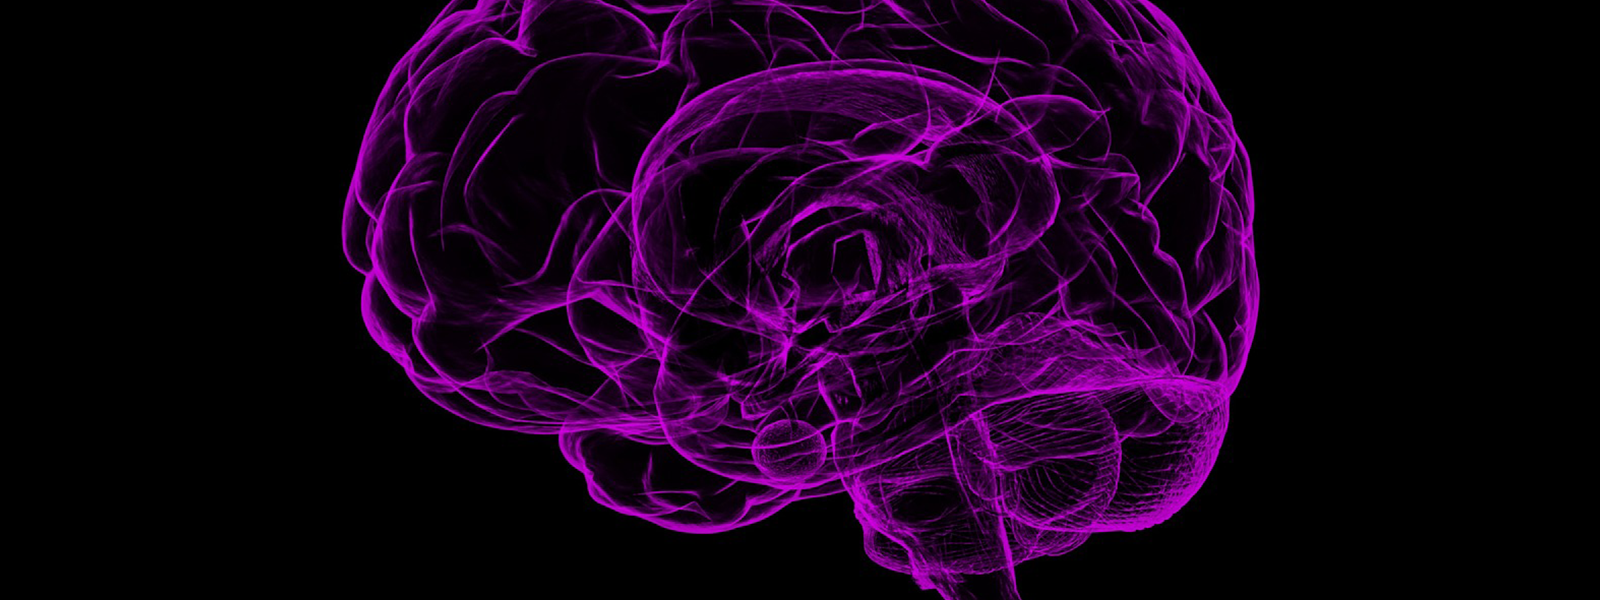 Purple wire-frame brain